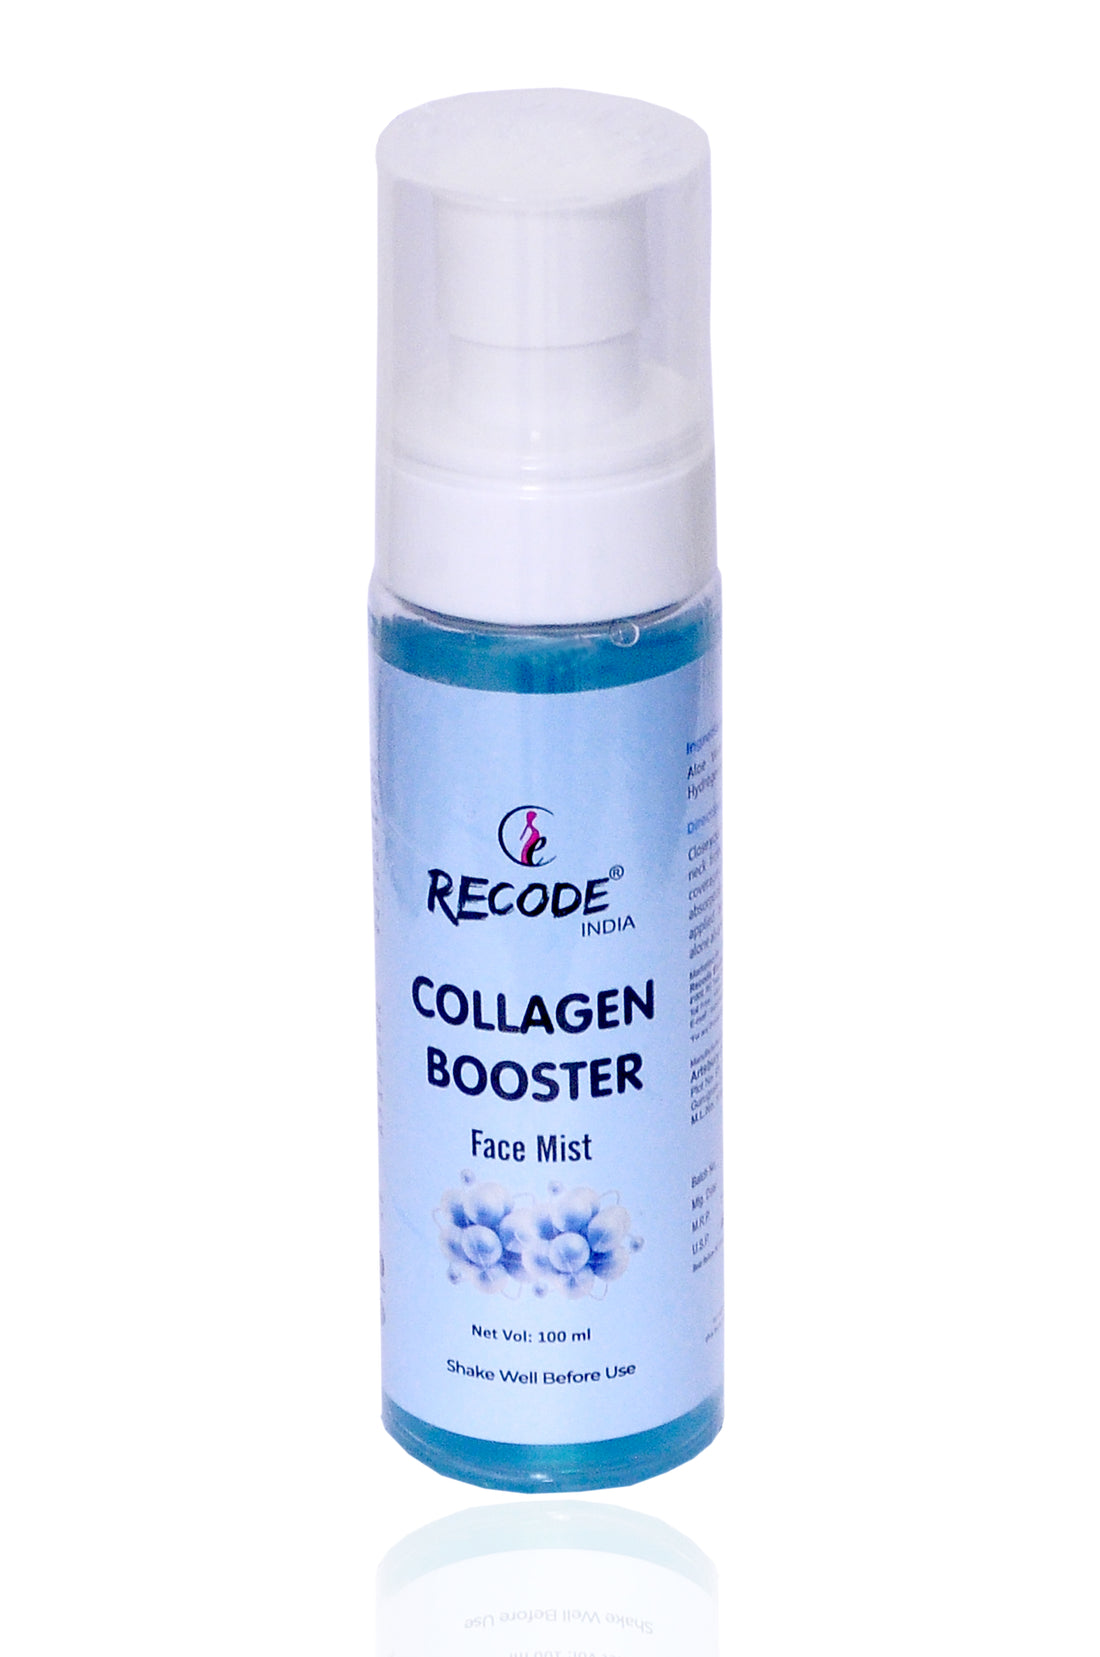 Collagen Booster Face Mist Toner for Wrinkles - 100 ml